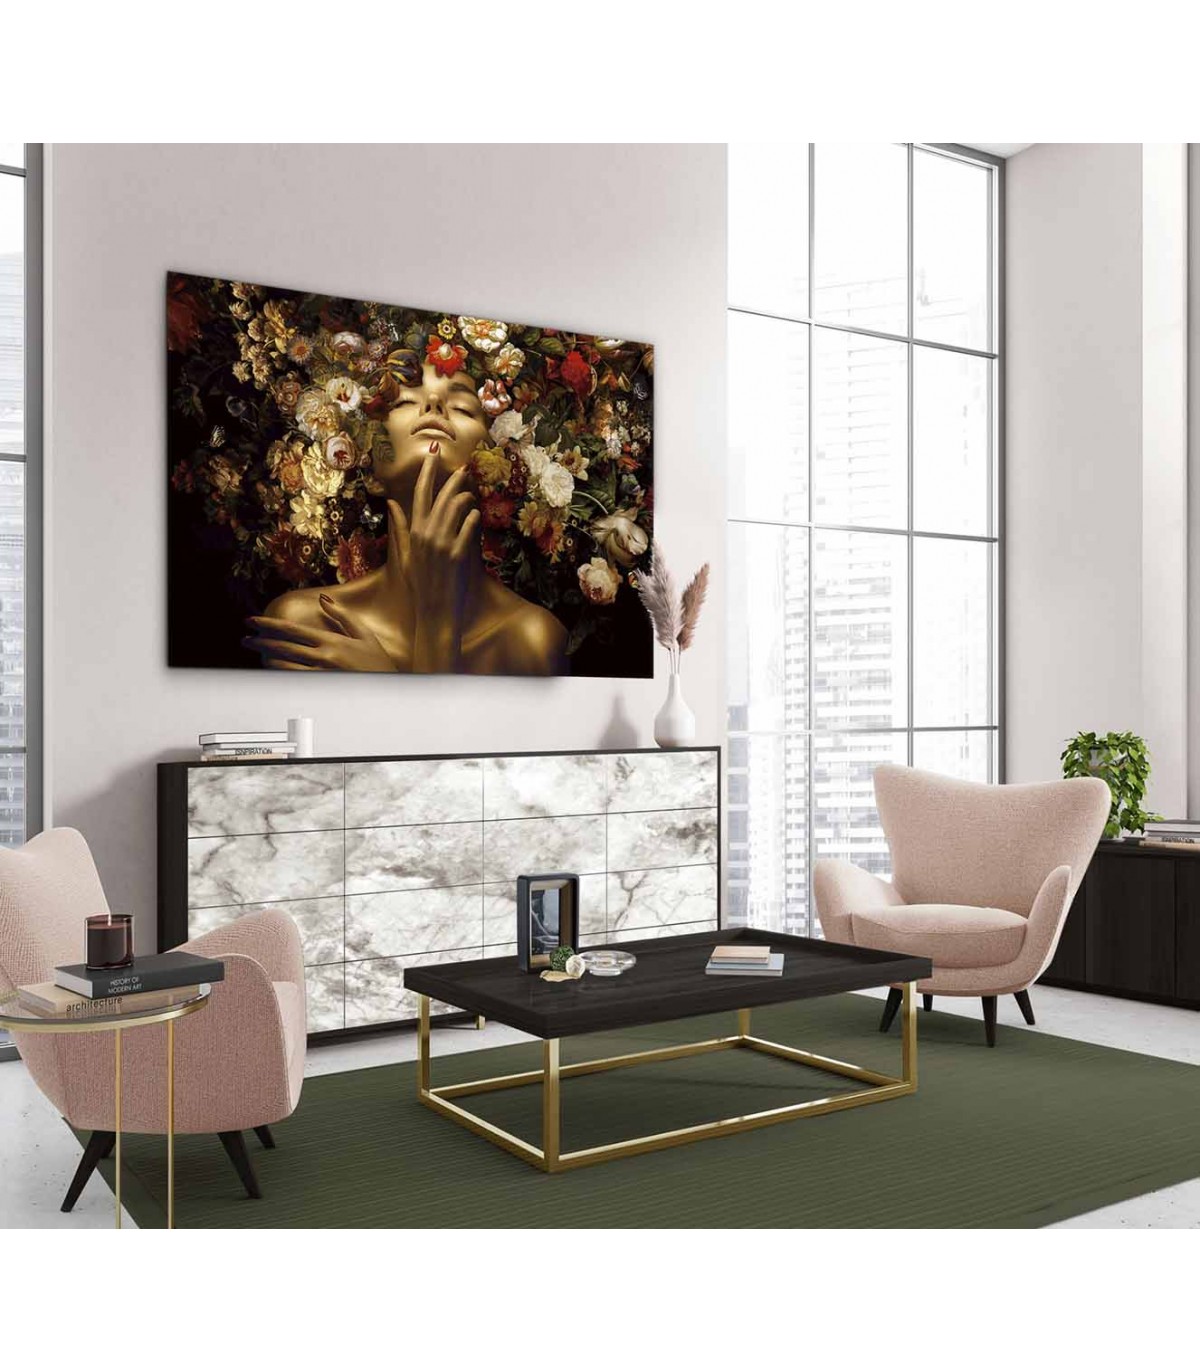 marcos para cuadros al oleo modernos - Buscar con Google  Wall art decor  living room, Wall art living room, Living room art